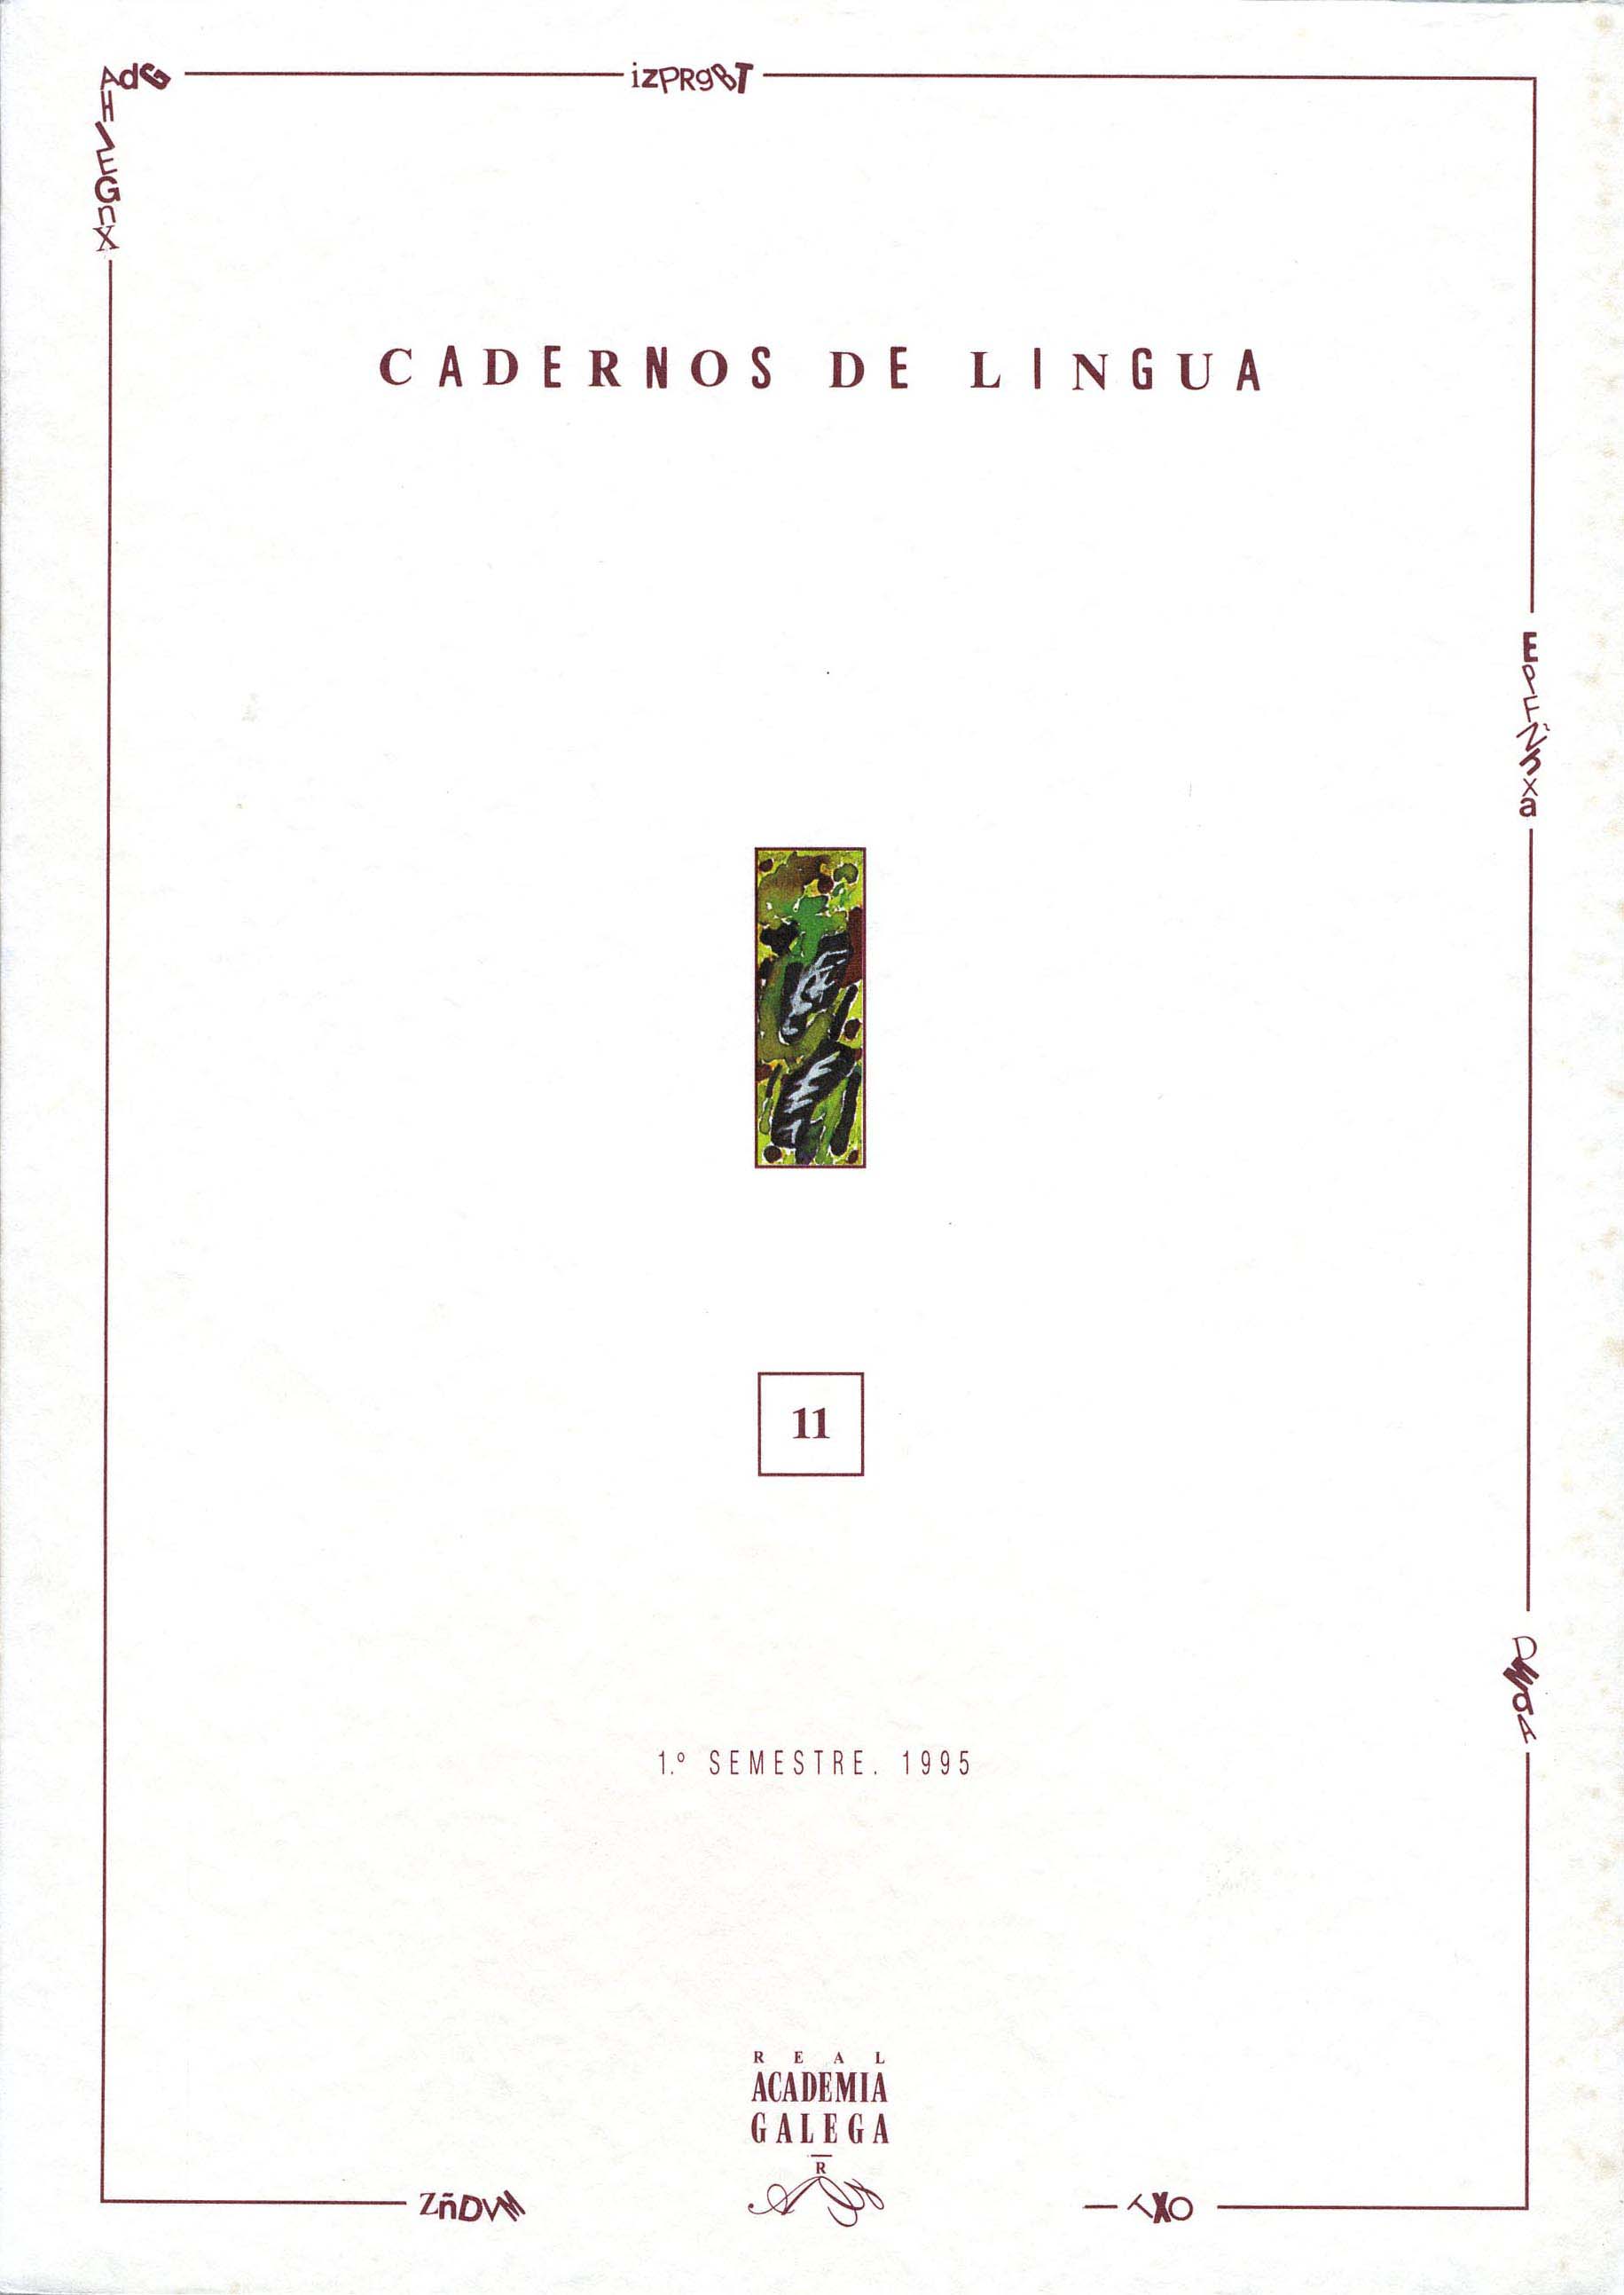 					View No. 11 (1995)
				